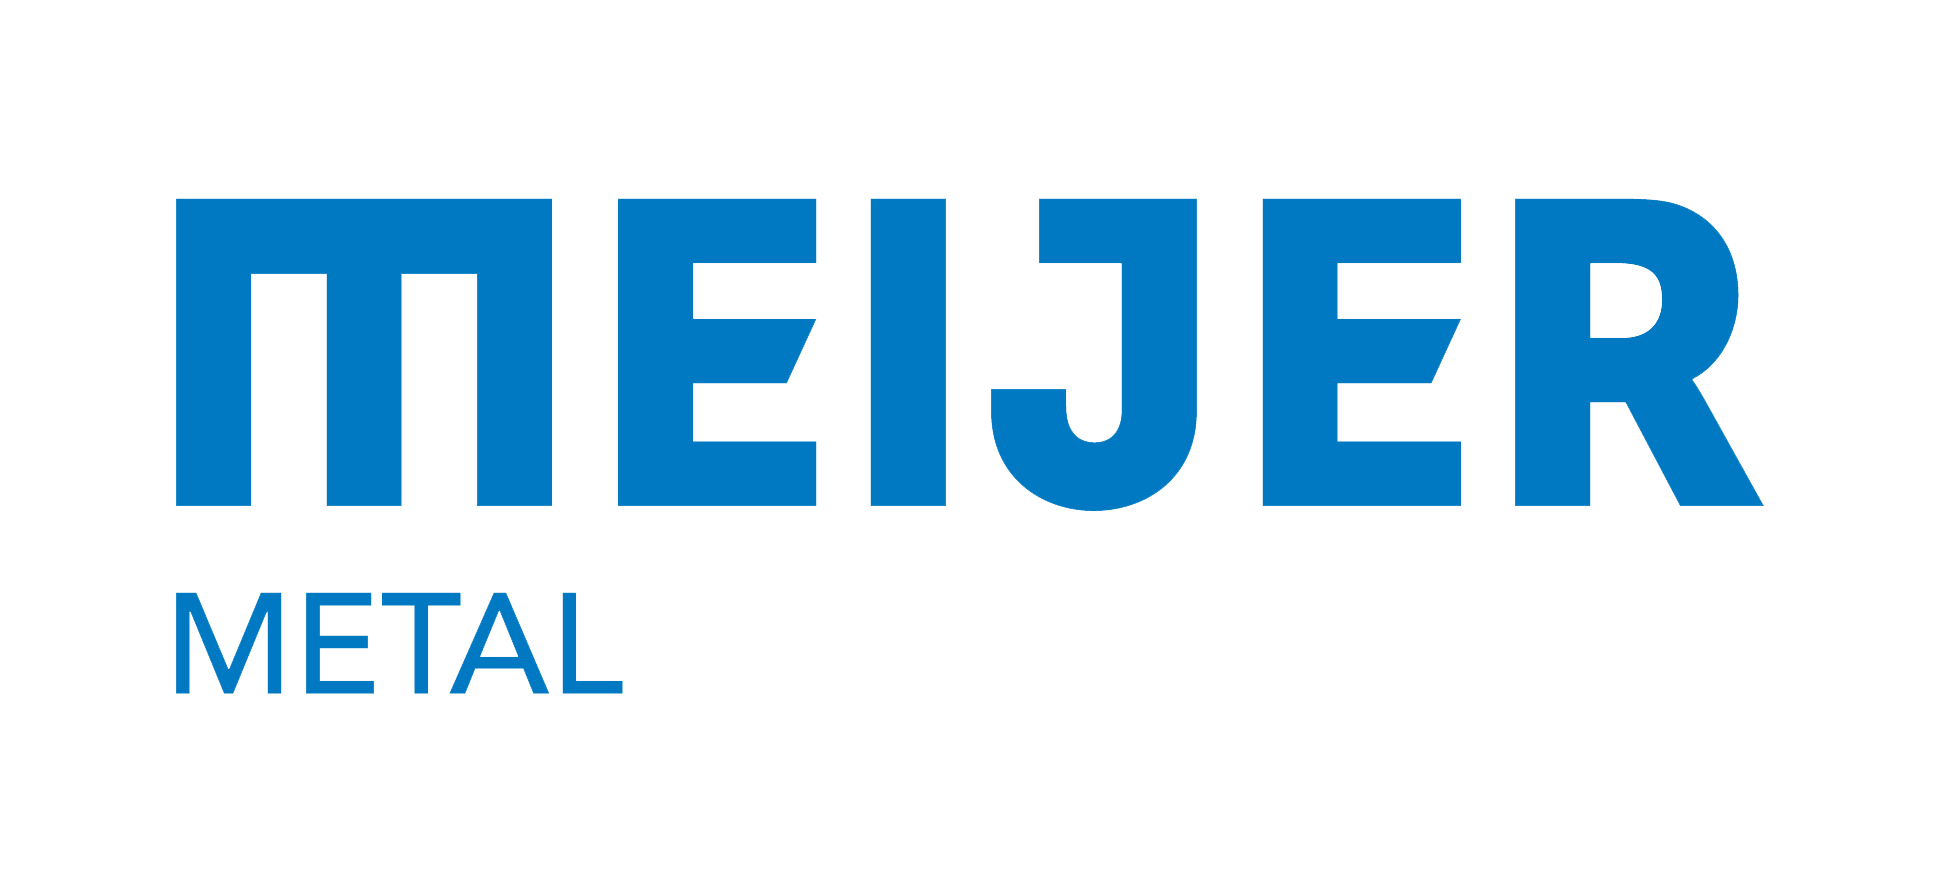 Meijer Brand Logo - Meijer Metal Logo 2016 Group.com